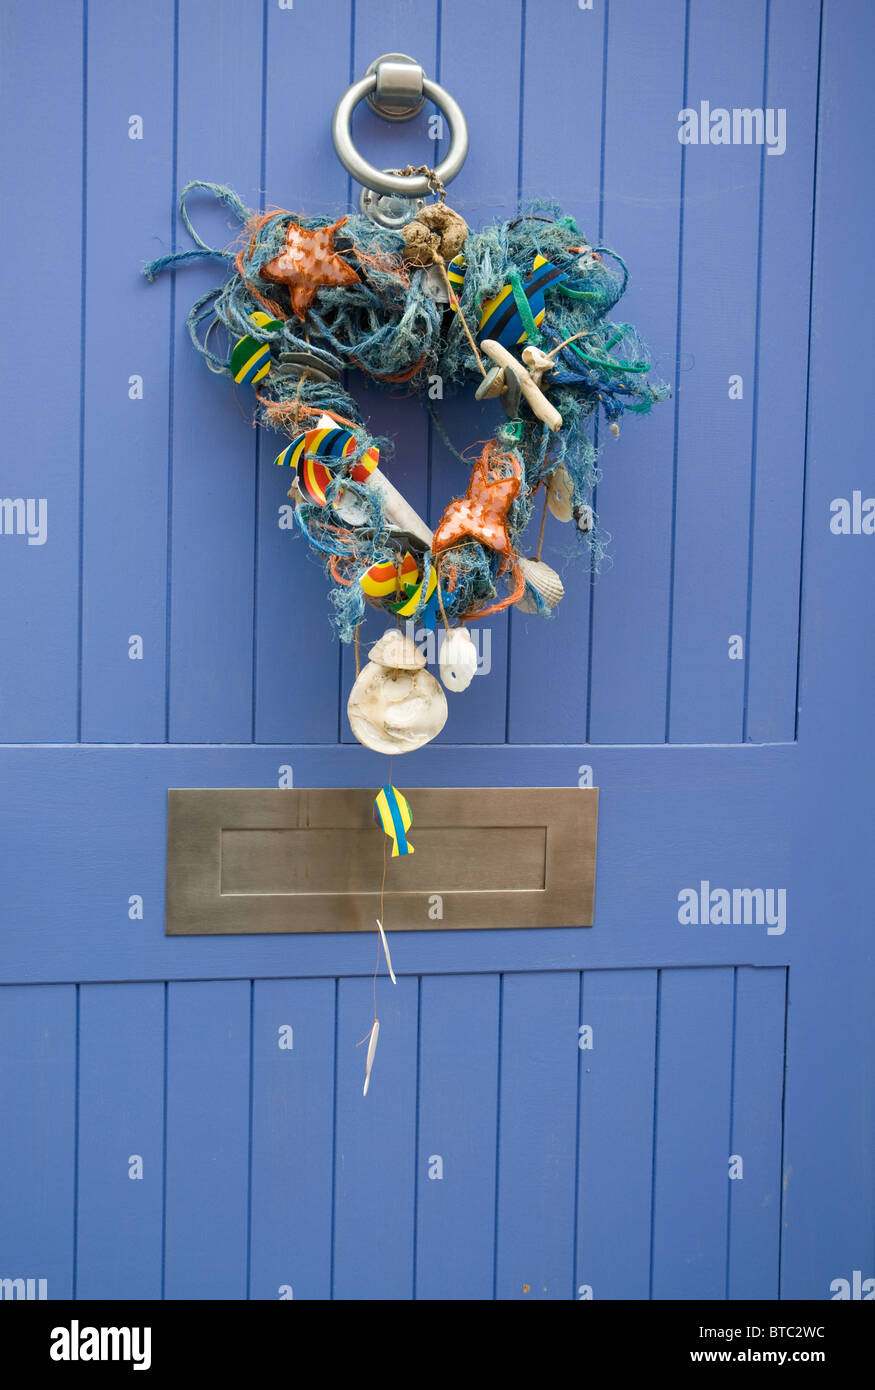 Bois flotté, coquillages et corde décoration sur une porte bleue Banque D'Images